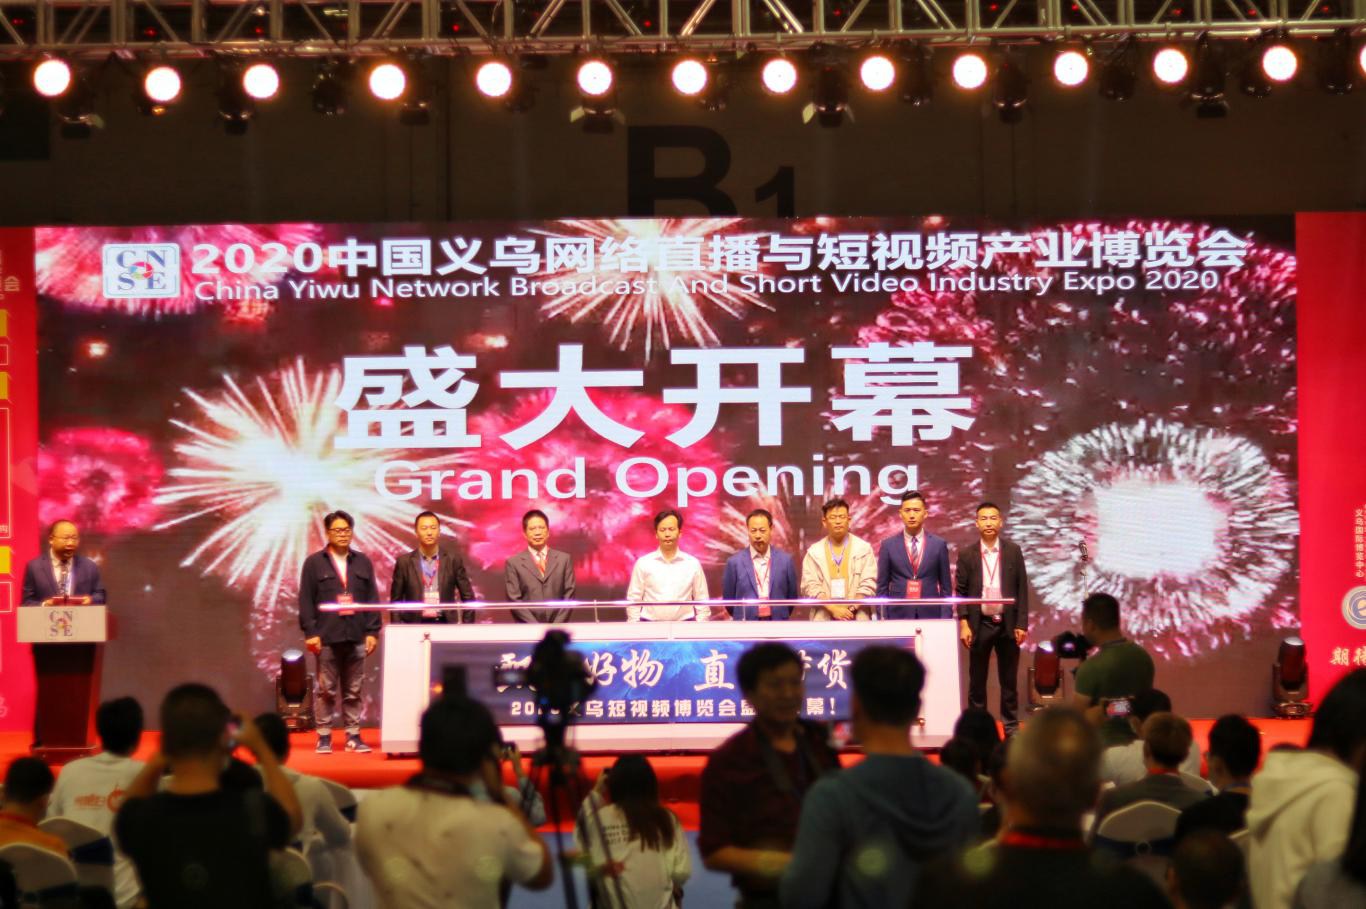 2020中国义乌网络直播与短视频产业博览会26日开幕